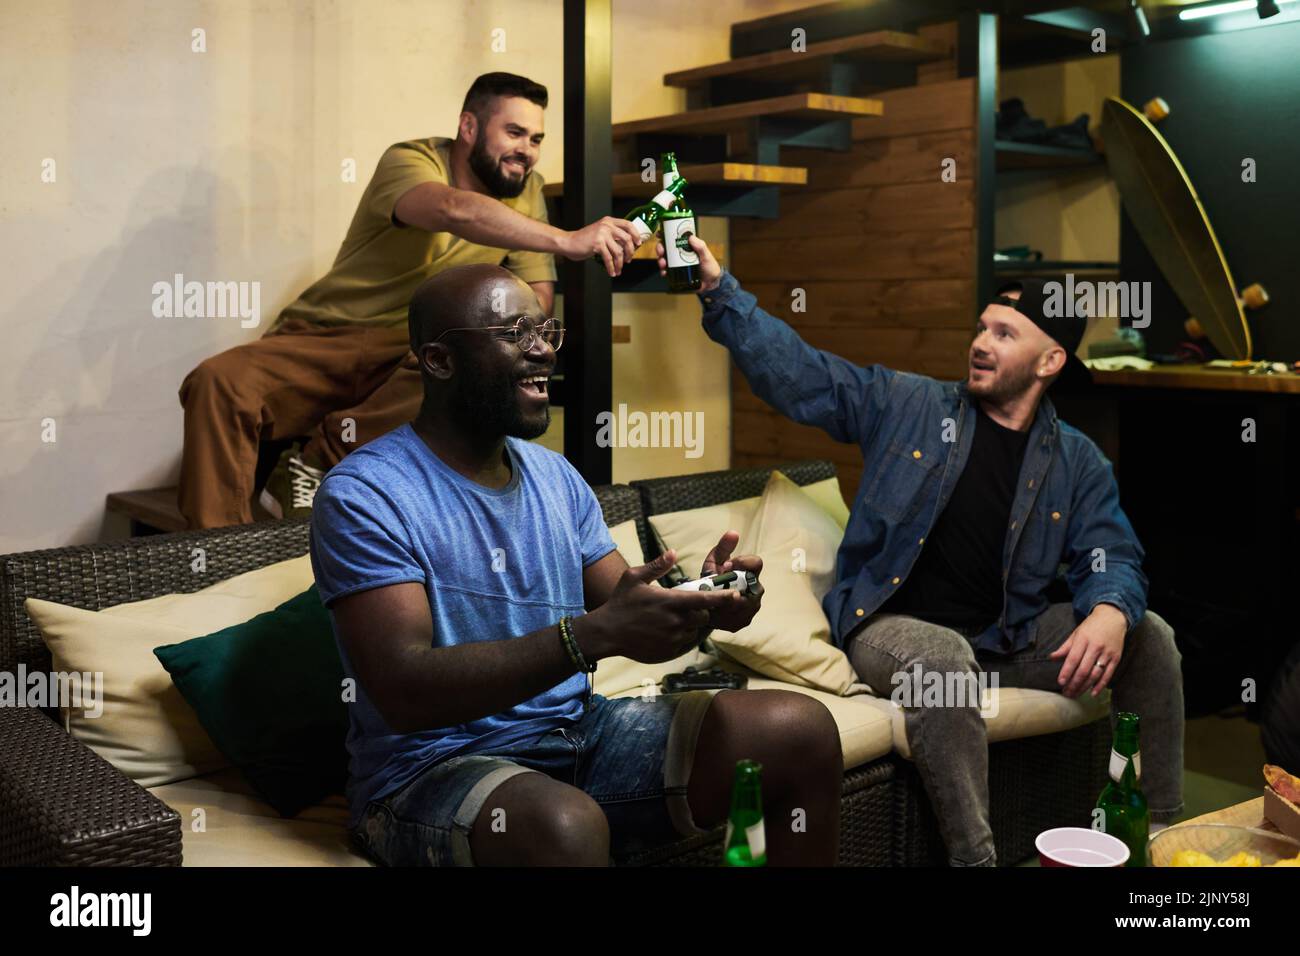 Dos chicos golpeando con botellas de cerveza mientras su amigo afroamericano con joystick sentado en el sofá y jugando a videojuegos Foto de stock